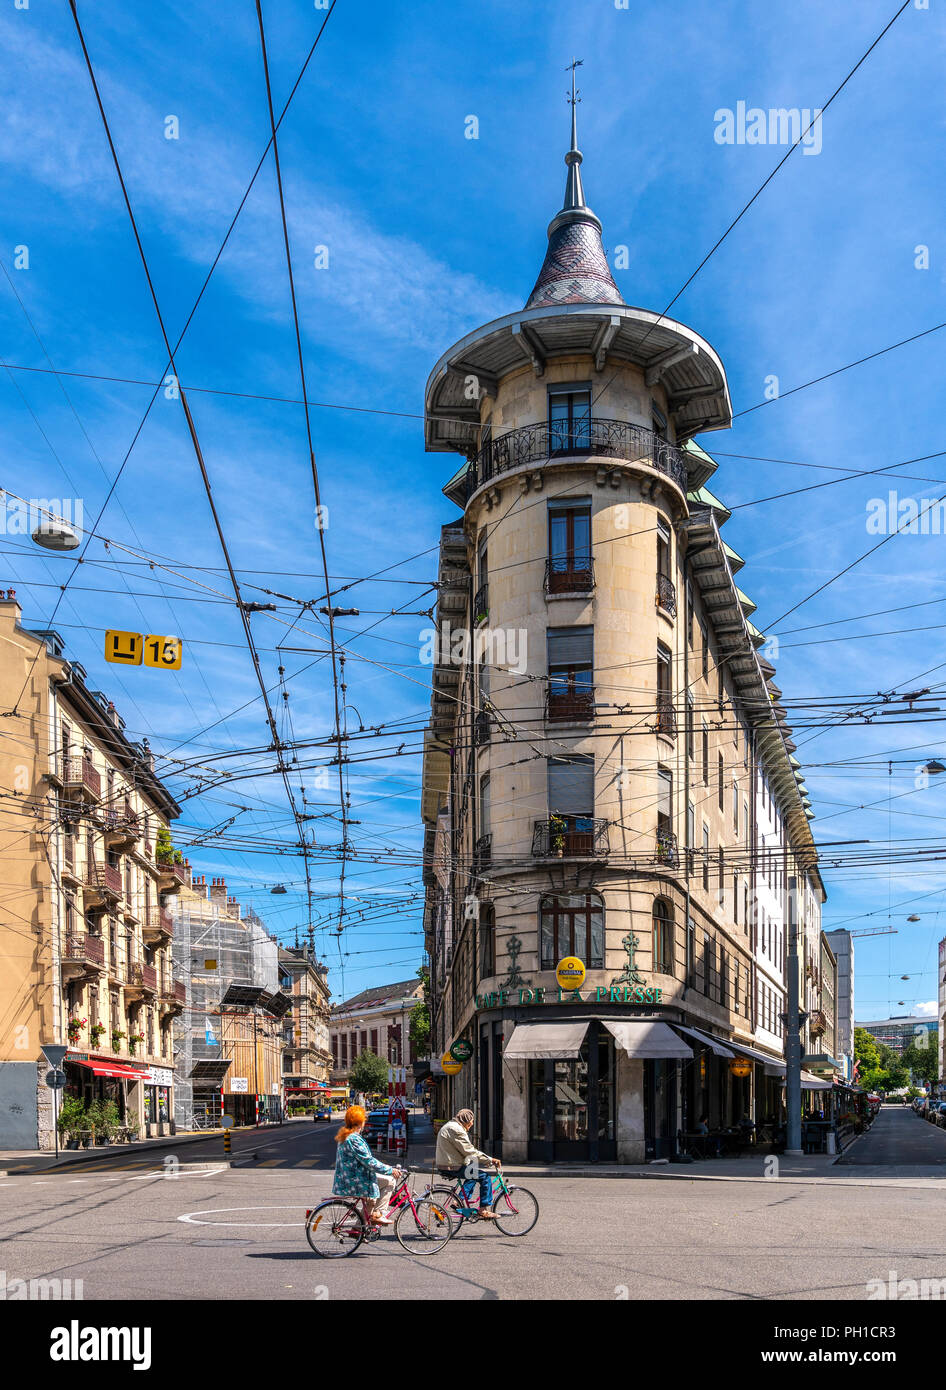 26 août 2018 - Genève, Suisse. Vertical image du réseau de tramway de Genève et belle architecture des maisons avec ciel bleu en arrière-plan Banque D'Images